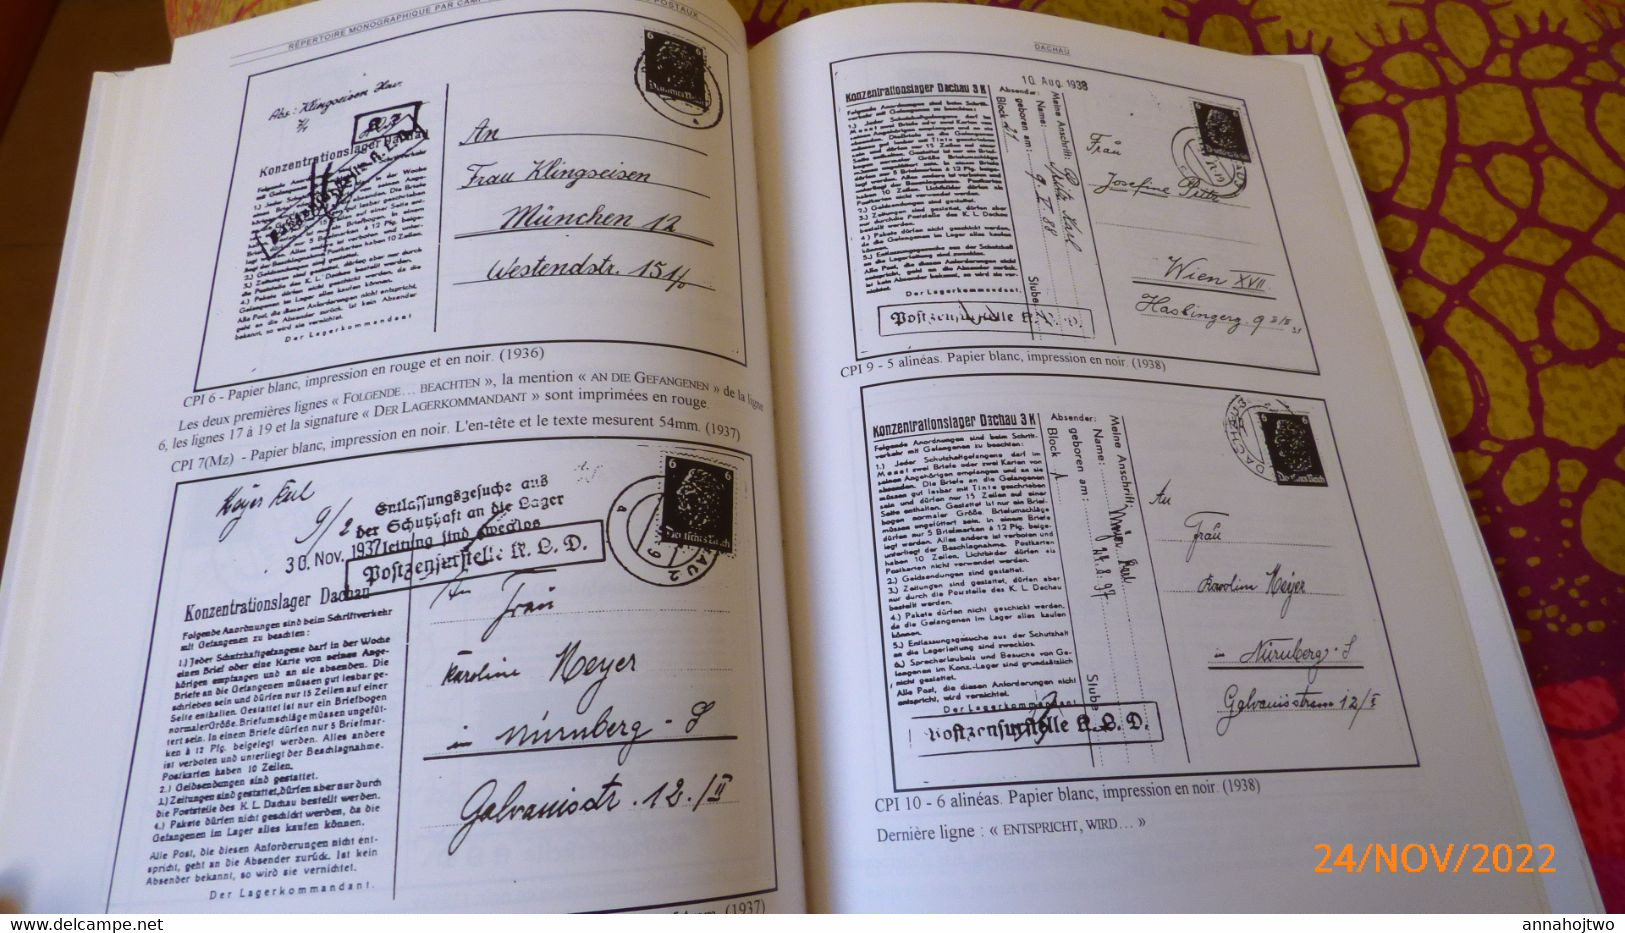 LE COURRIER DES CAMPS DE CONCENTRATION-Marques & documents postaux 1933-1945-Classement par camp,déportés/ J.Lajournade